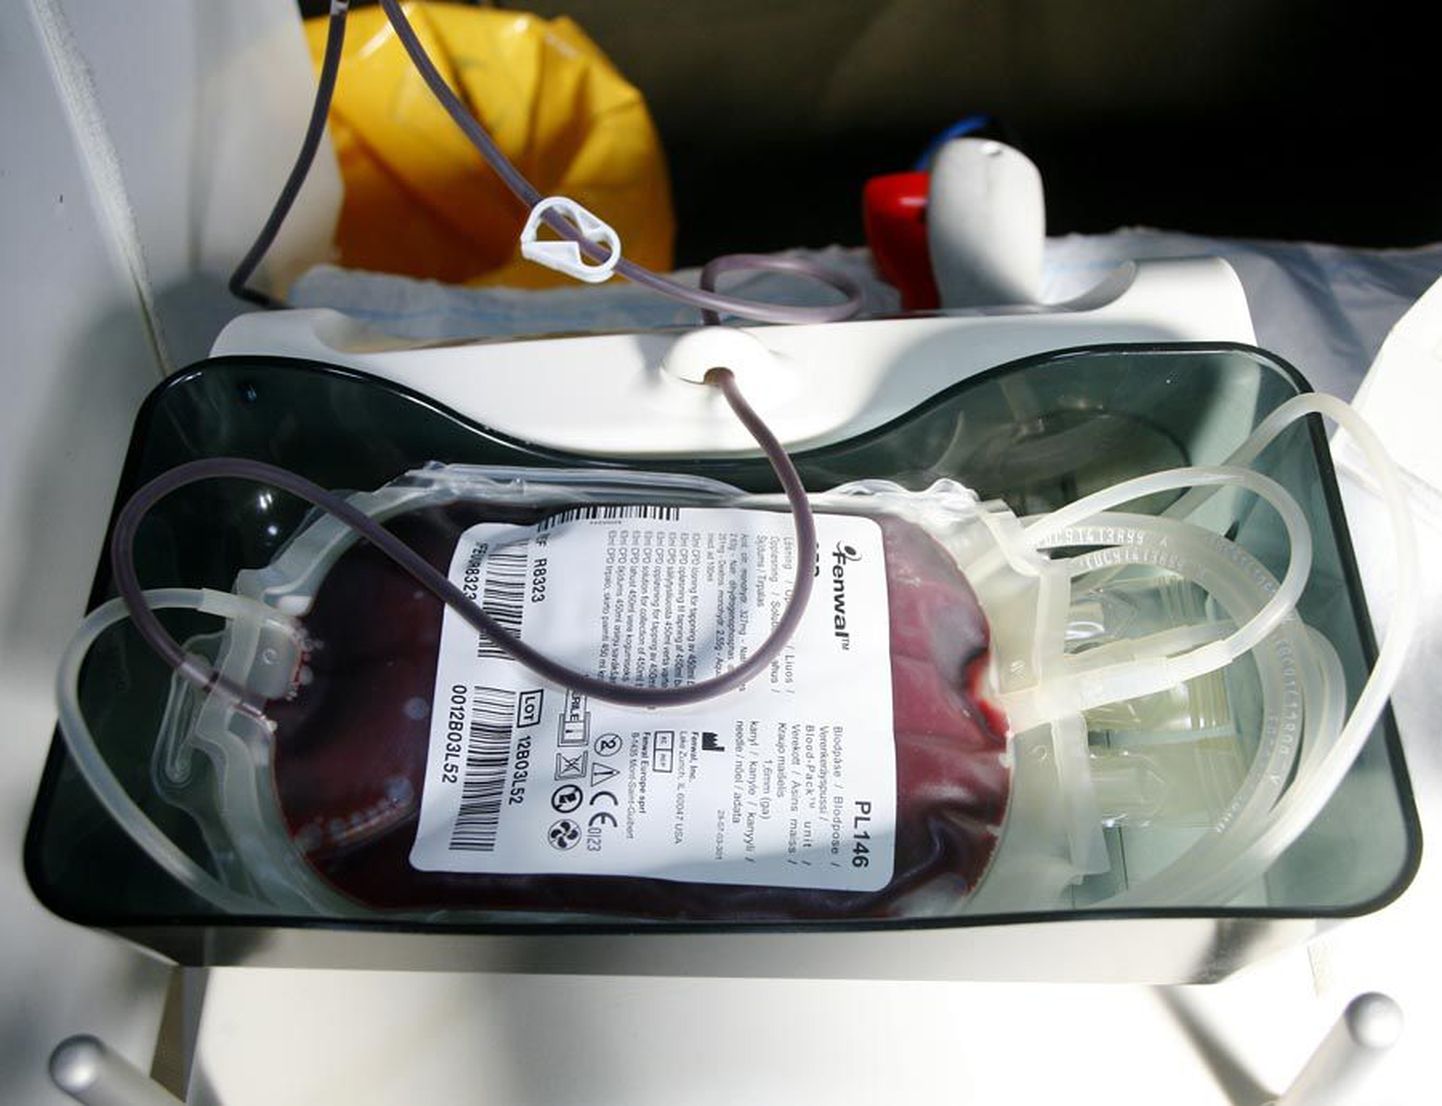 Eelmisel nädalal kaotas verekeskus järjekordse A-hepatiidi juhtumi tõttu igasuguse lootuse, et peagi saab Viljandimaal doonoripäevi korraldada. Sel nädalal andis terviseameti epidemioloogiabüroo nõusoleku, et teatud tingimustel võib Viljandimaal uuesti verd koguma hakata.